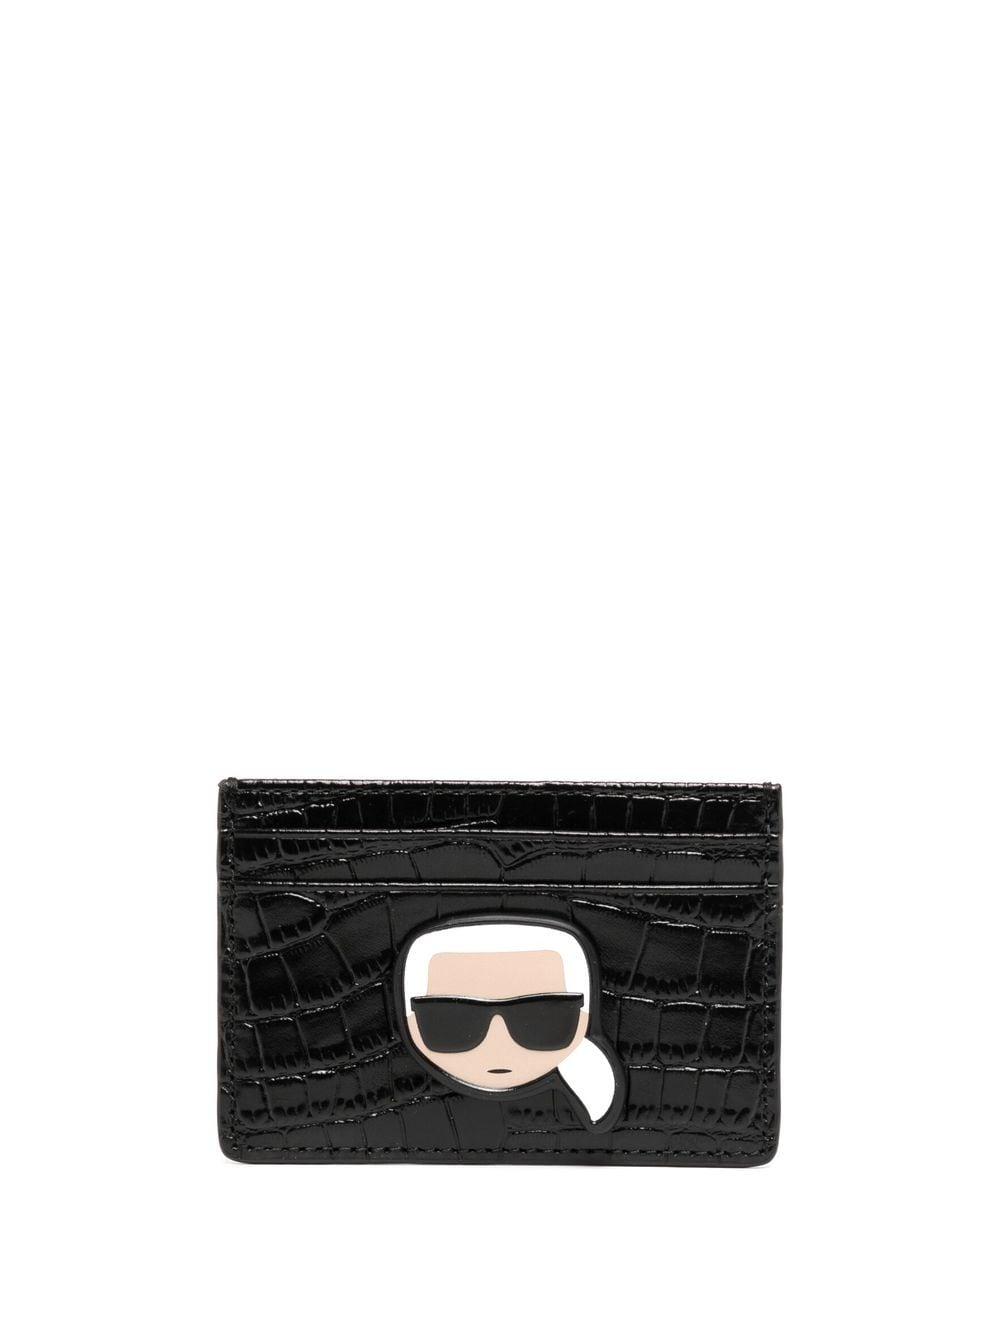 Karl Lagerfeld Crocodile-effect Leather Wallet in Black | Lyst